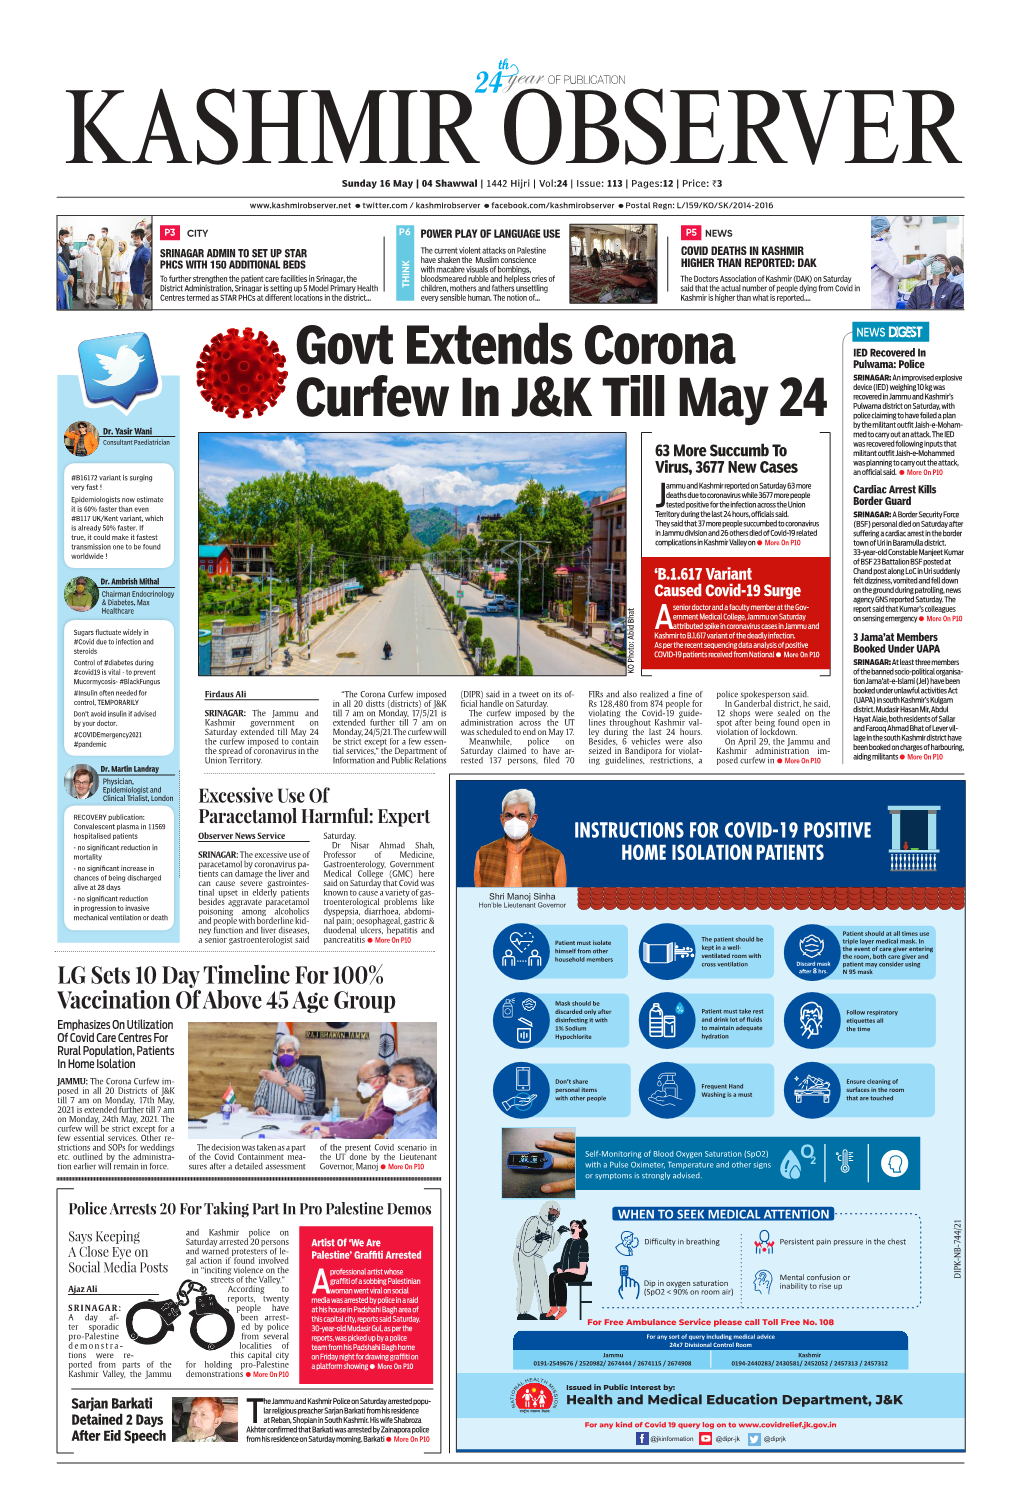 Govt Extends Corona Curfew in J&K Till May 24